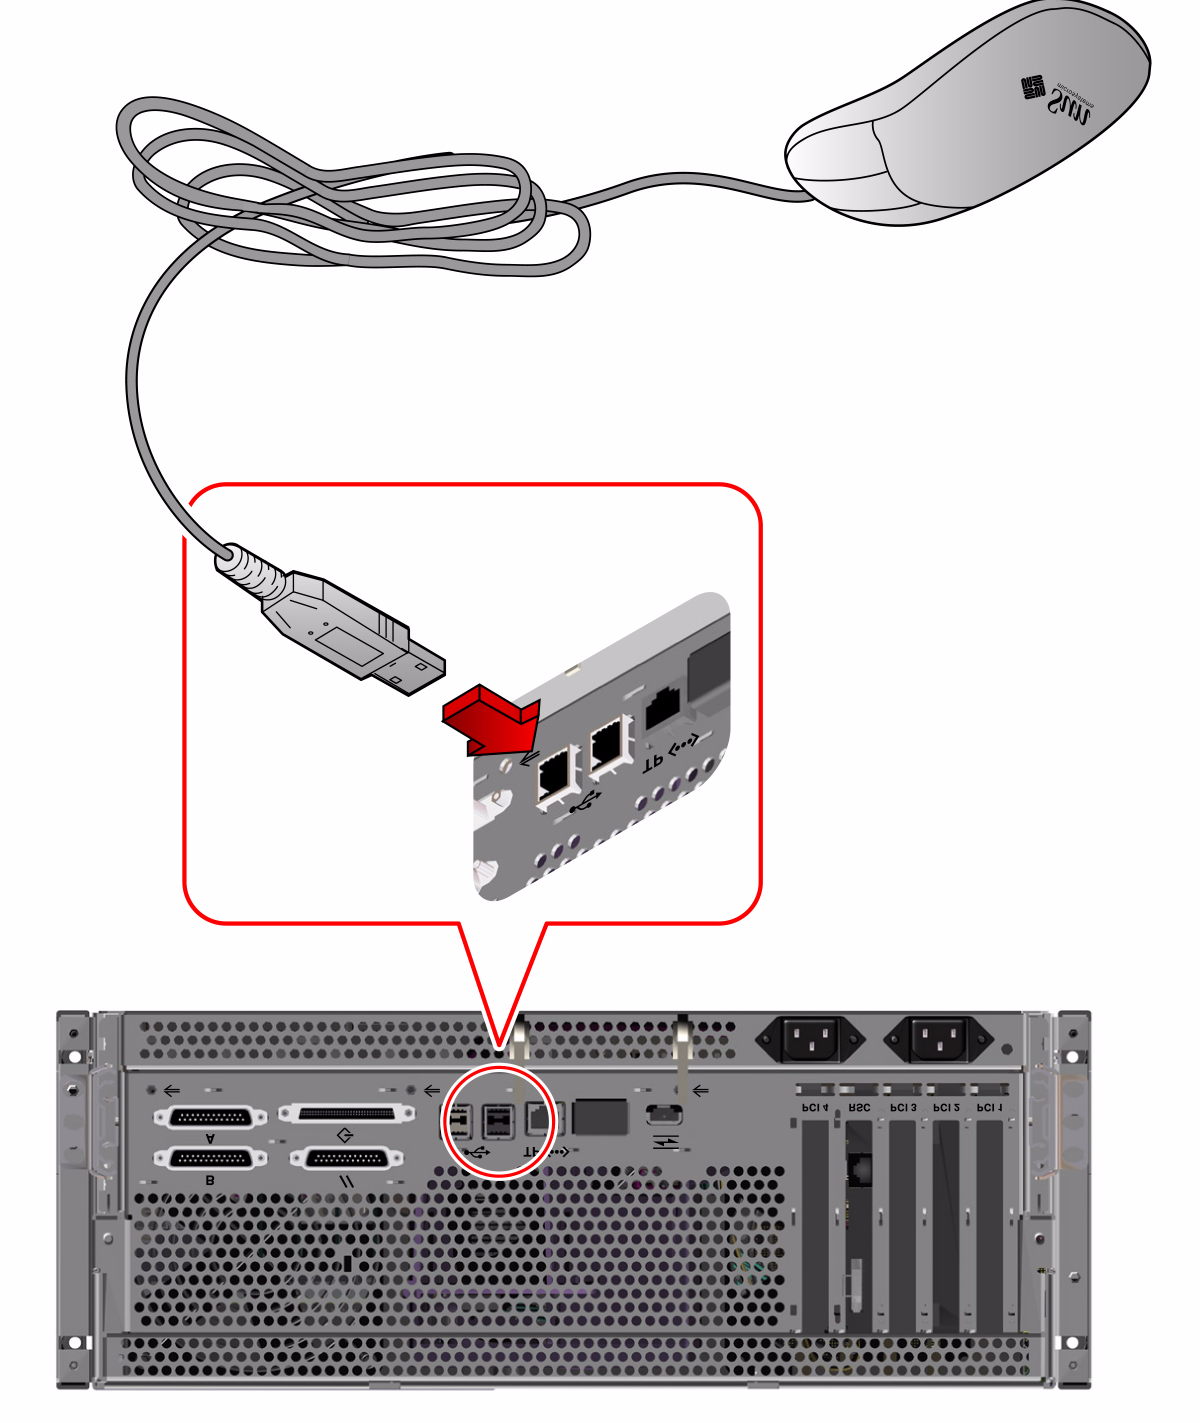 5. Anslut musens USB-kabel till någon av USB-portarna på bakpanelen.